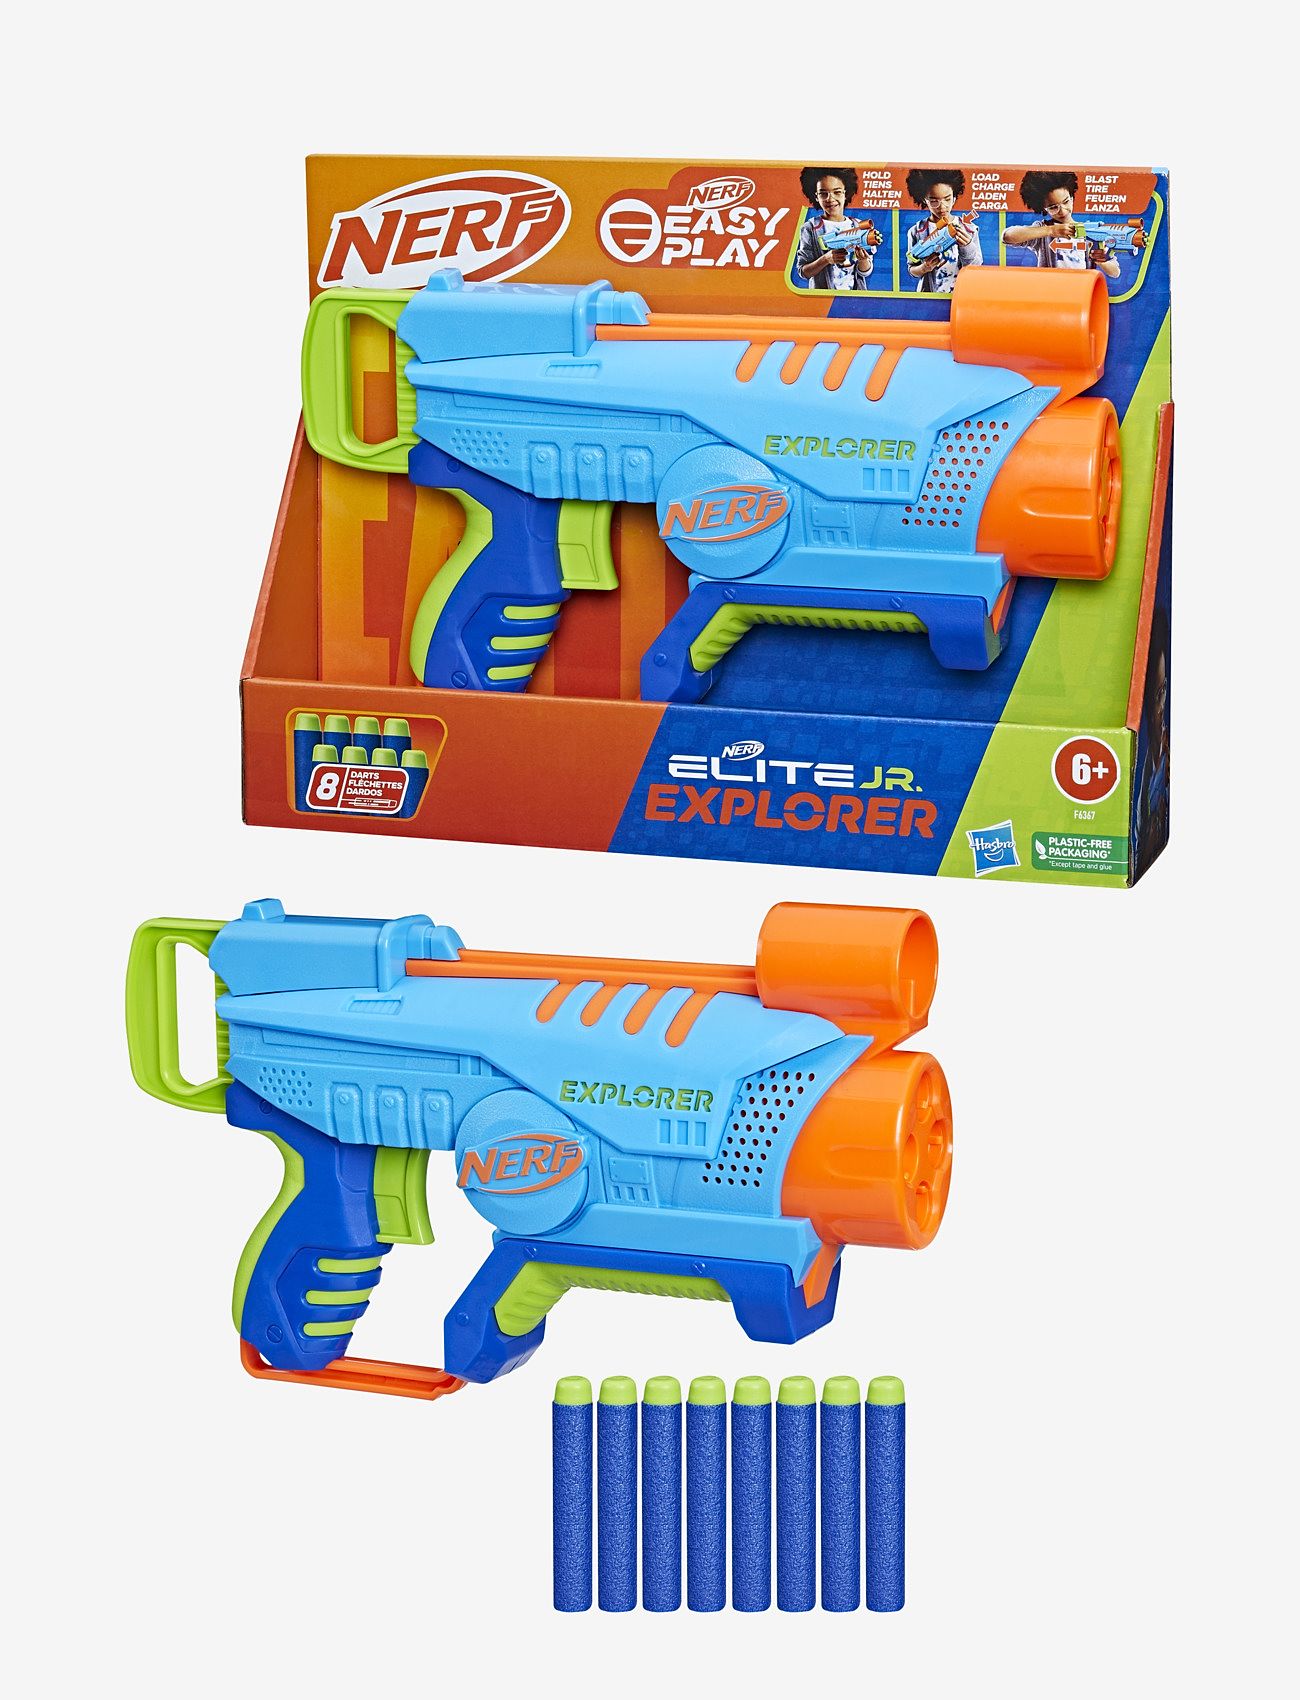 Nerf - Nerf Elite Jr Explorer - die niedrigsten preise - multi coloured - 0